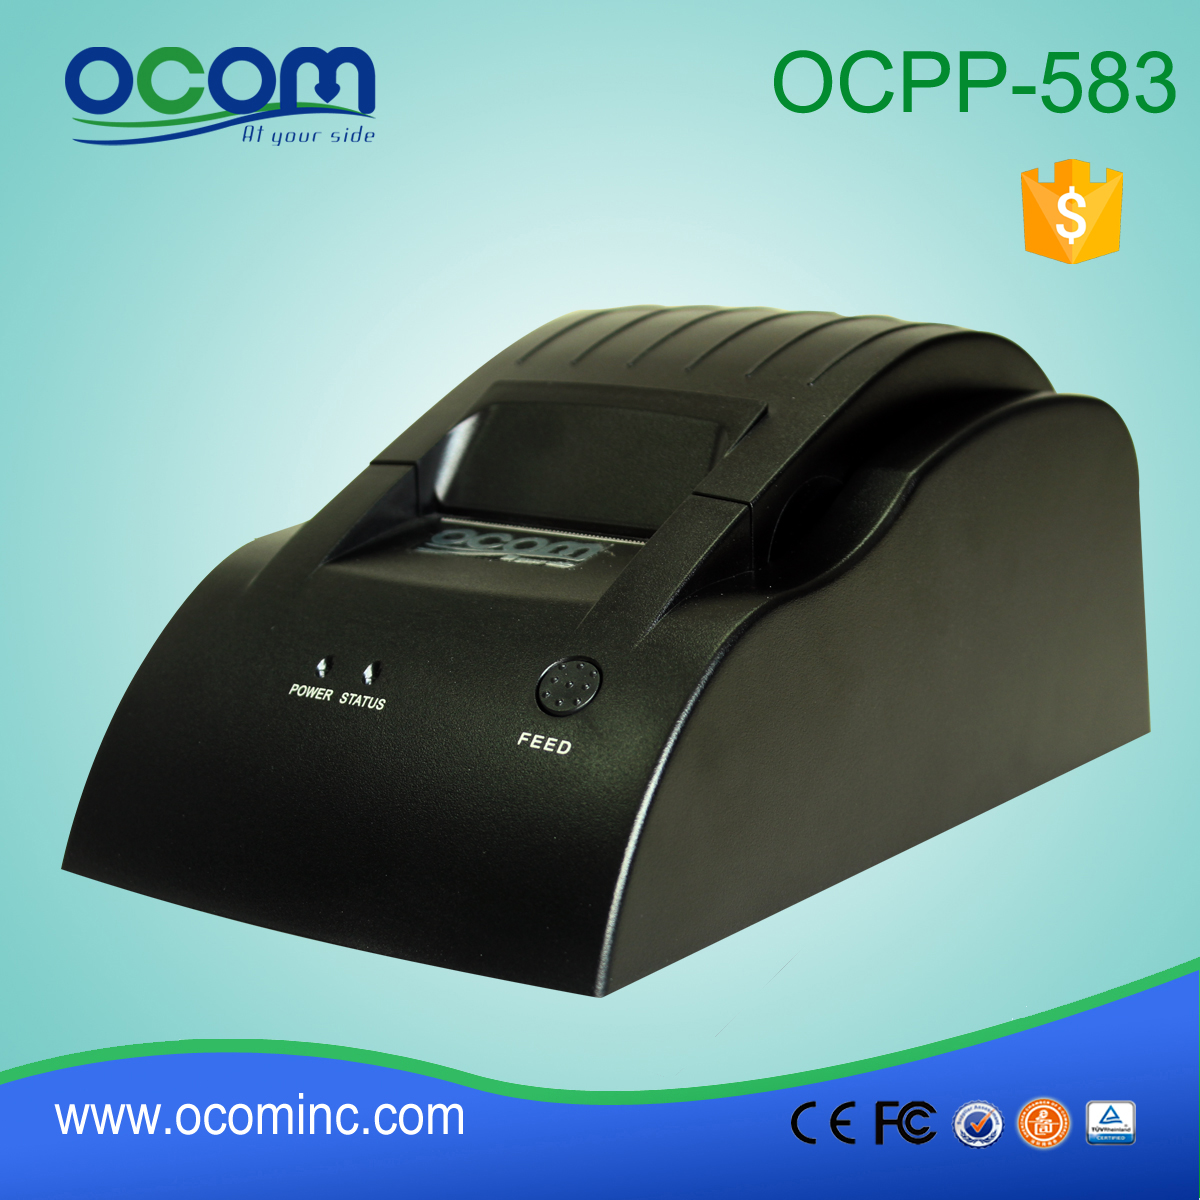 OCPP-583 58MM直接热收据打印机